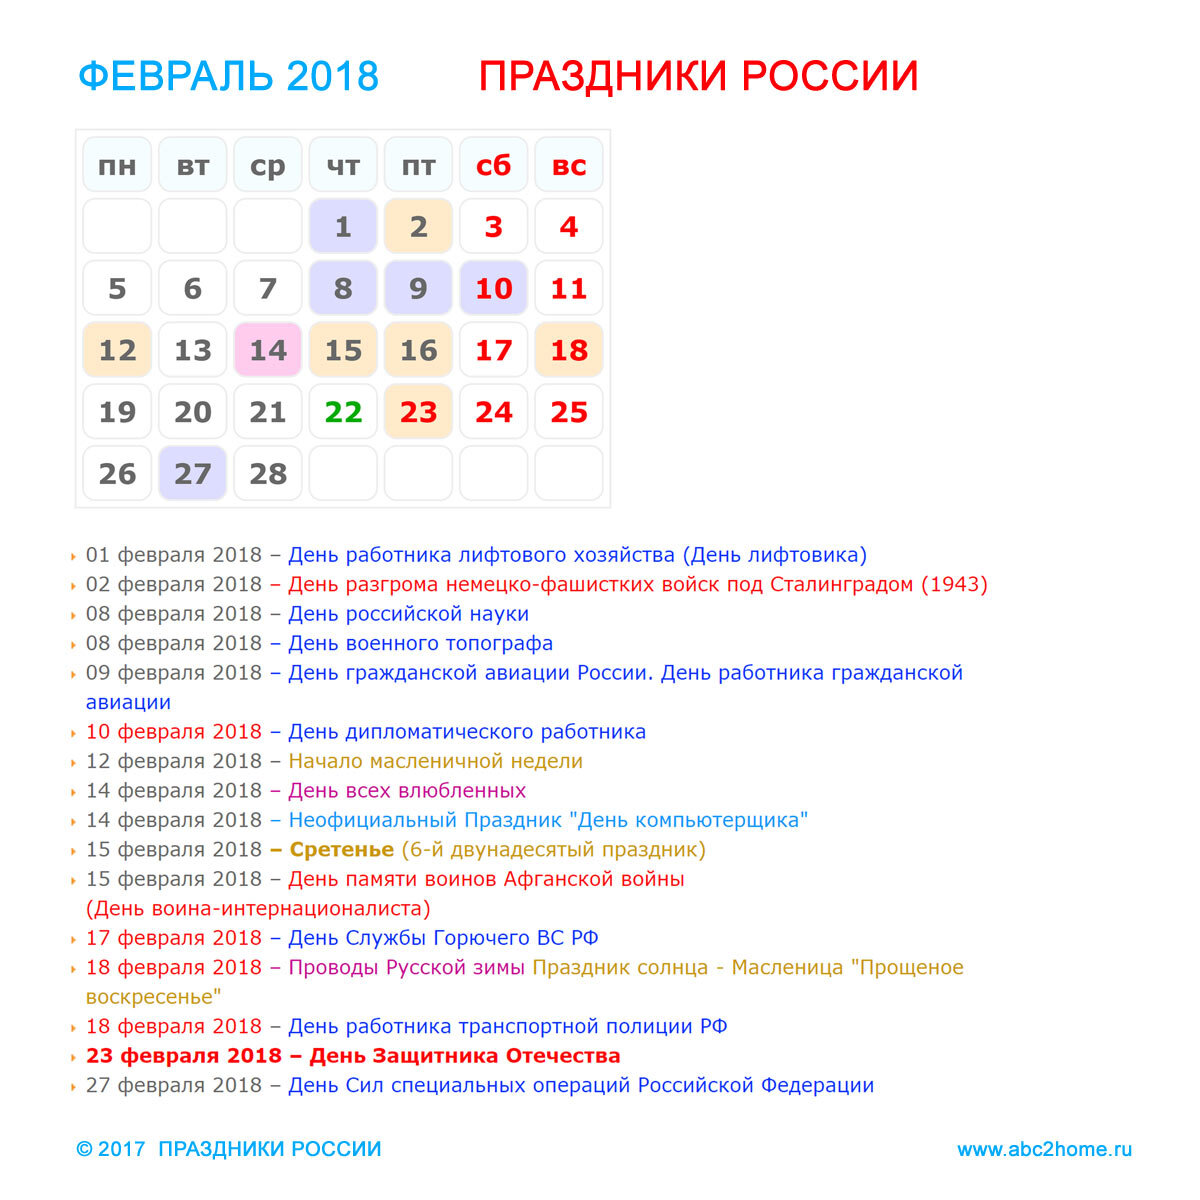 Праздники в москве в феврале. Праздники в феврале. Календарь праздников на февраль. Праздники в феврале в России. Международные праздники в феврале.